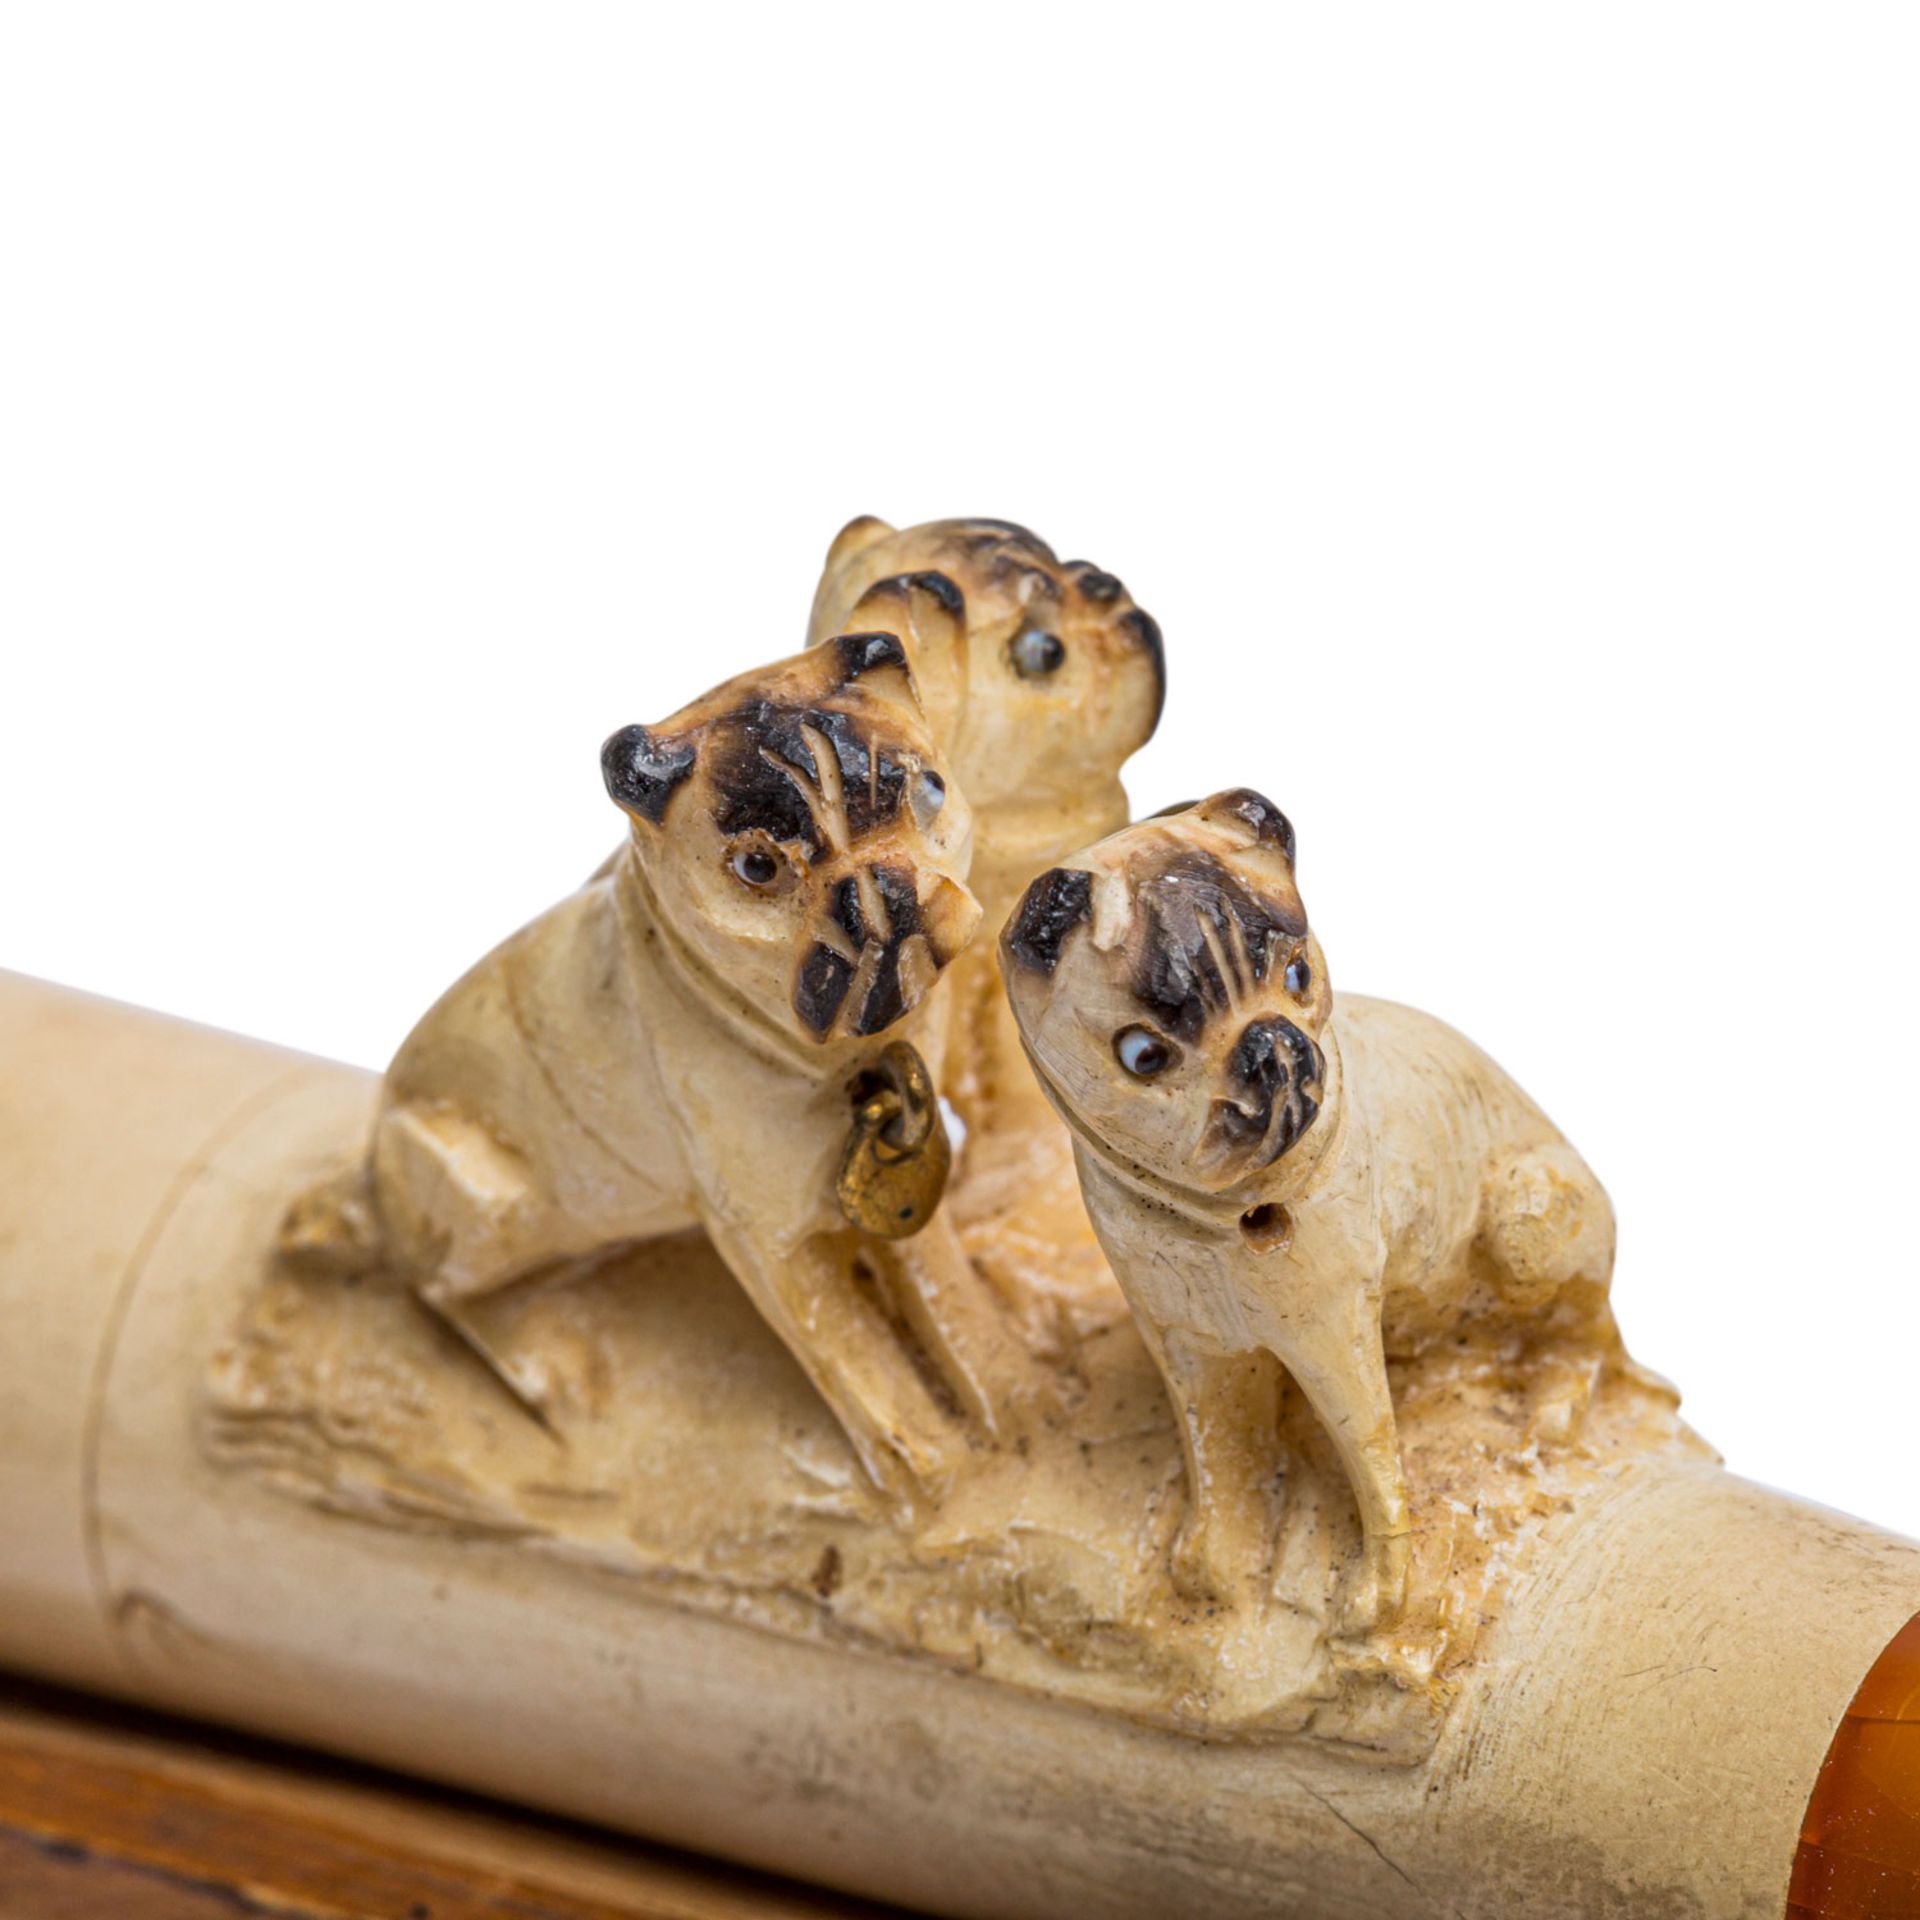 MEERSCHAUMPFEIFE mit Mops-Hunden, 1. H. 20. Jh.Mundstück aus Bernstein, 3 sitzende Möpse mit - Bild 2 aus 3